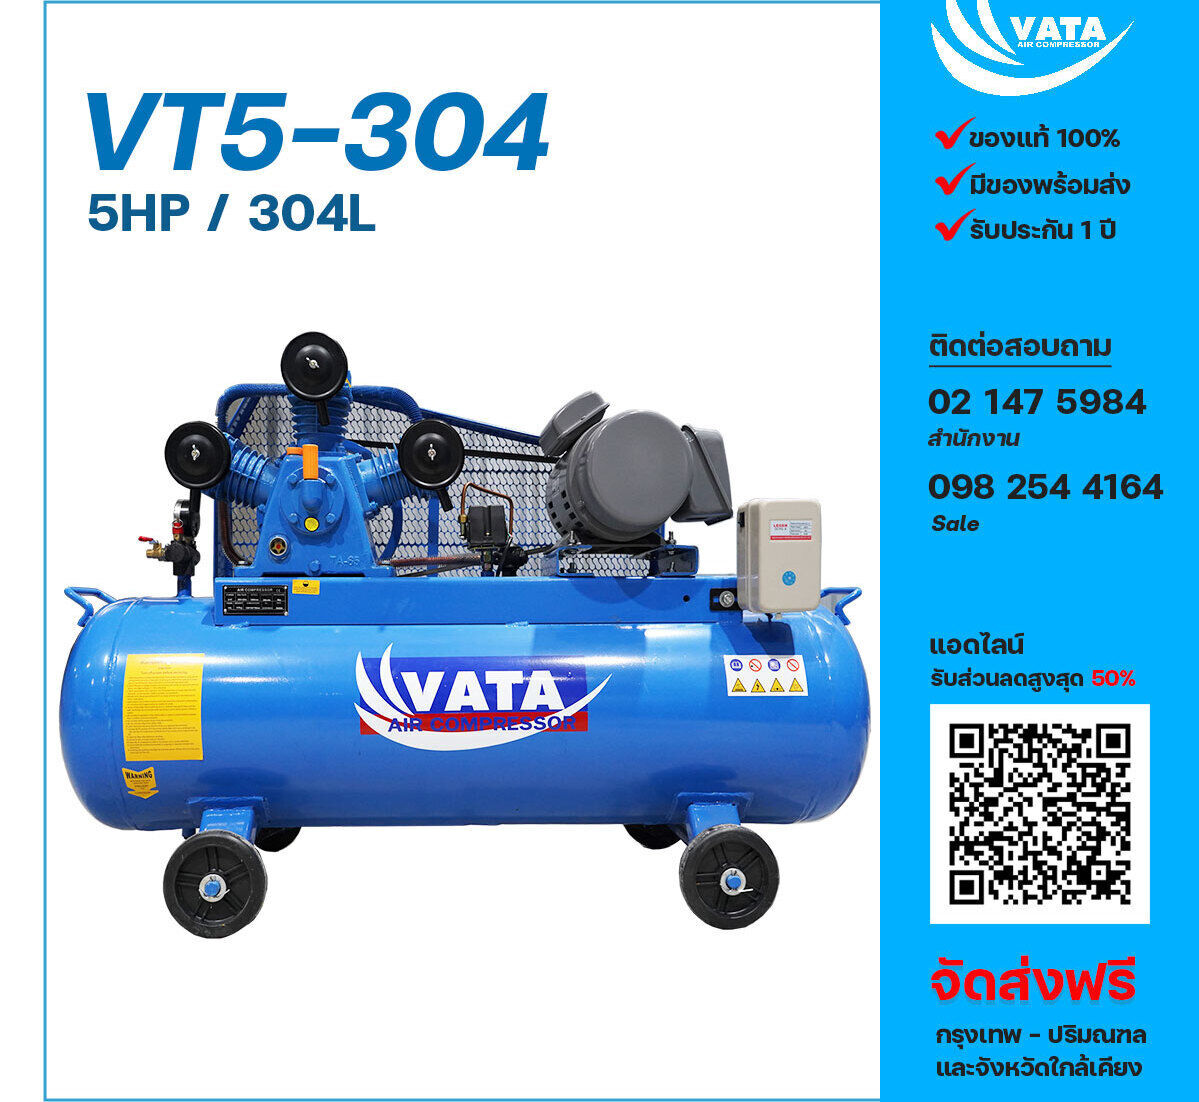 ปั๊มลมวาตะ VATA VT5-304 380V ปั๊มลมลูกสูบ ขนาด 3 สูบ 5 แรงม้า 304 ลิตร VATA พร้อมมอเตอร์ ไฟ 380V ส่งฟรี กรุงเทพฯ-ปริมณฑล รับประกัน 1 ปี